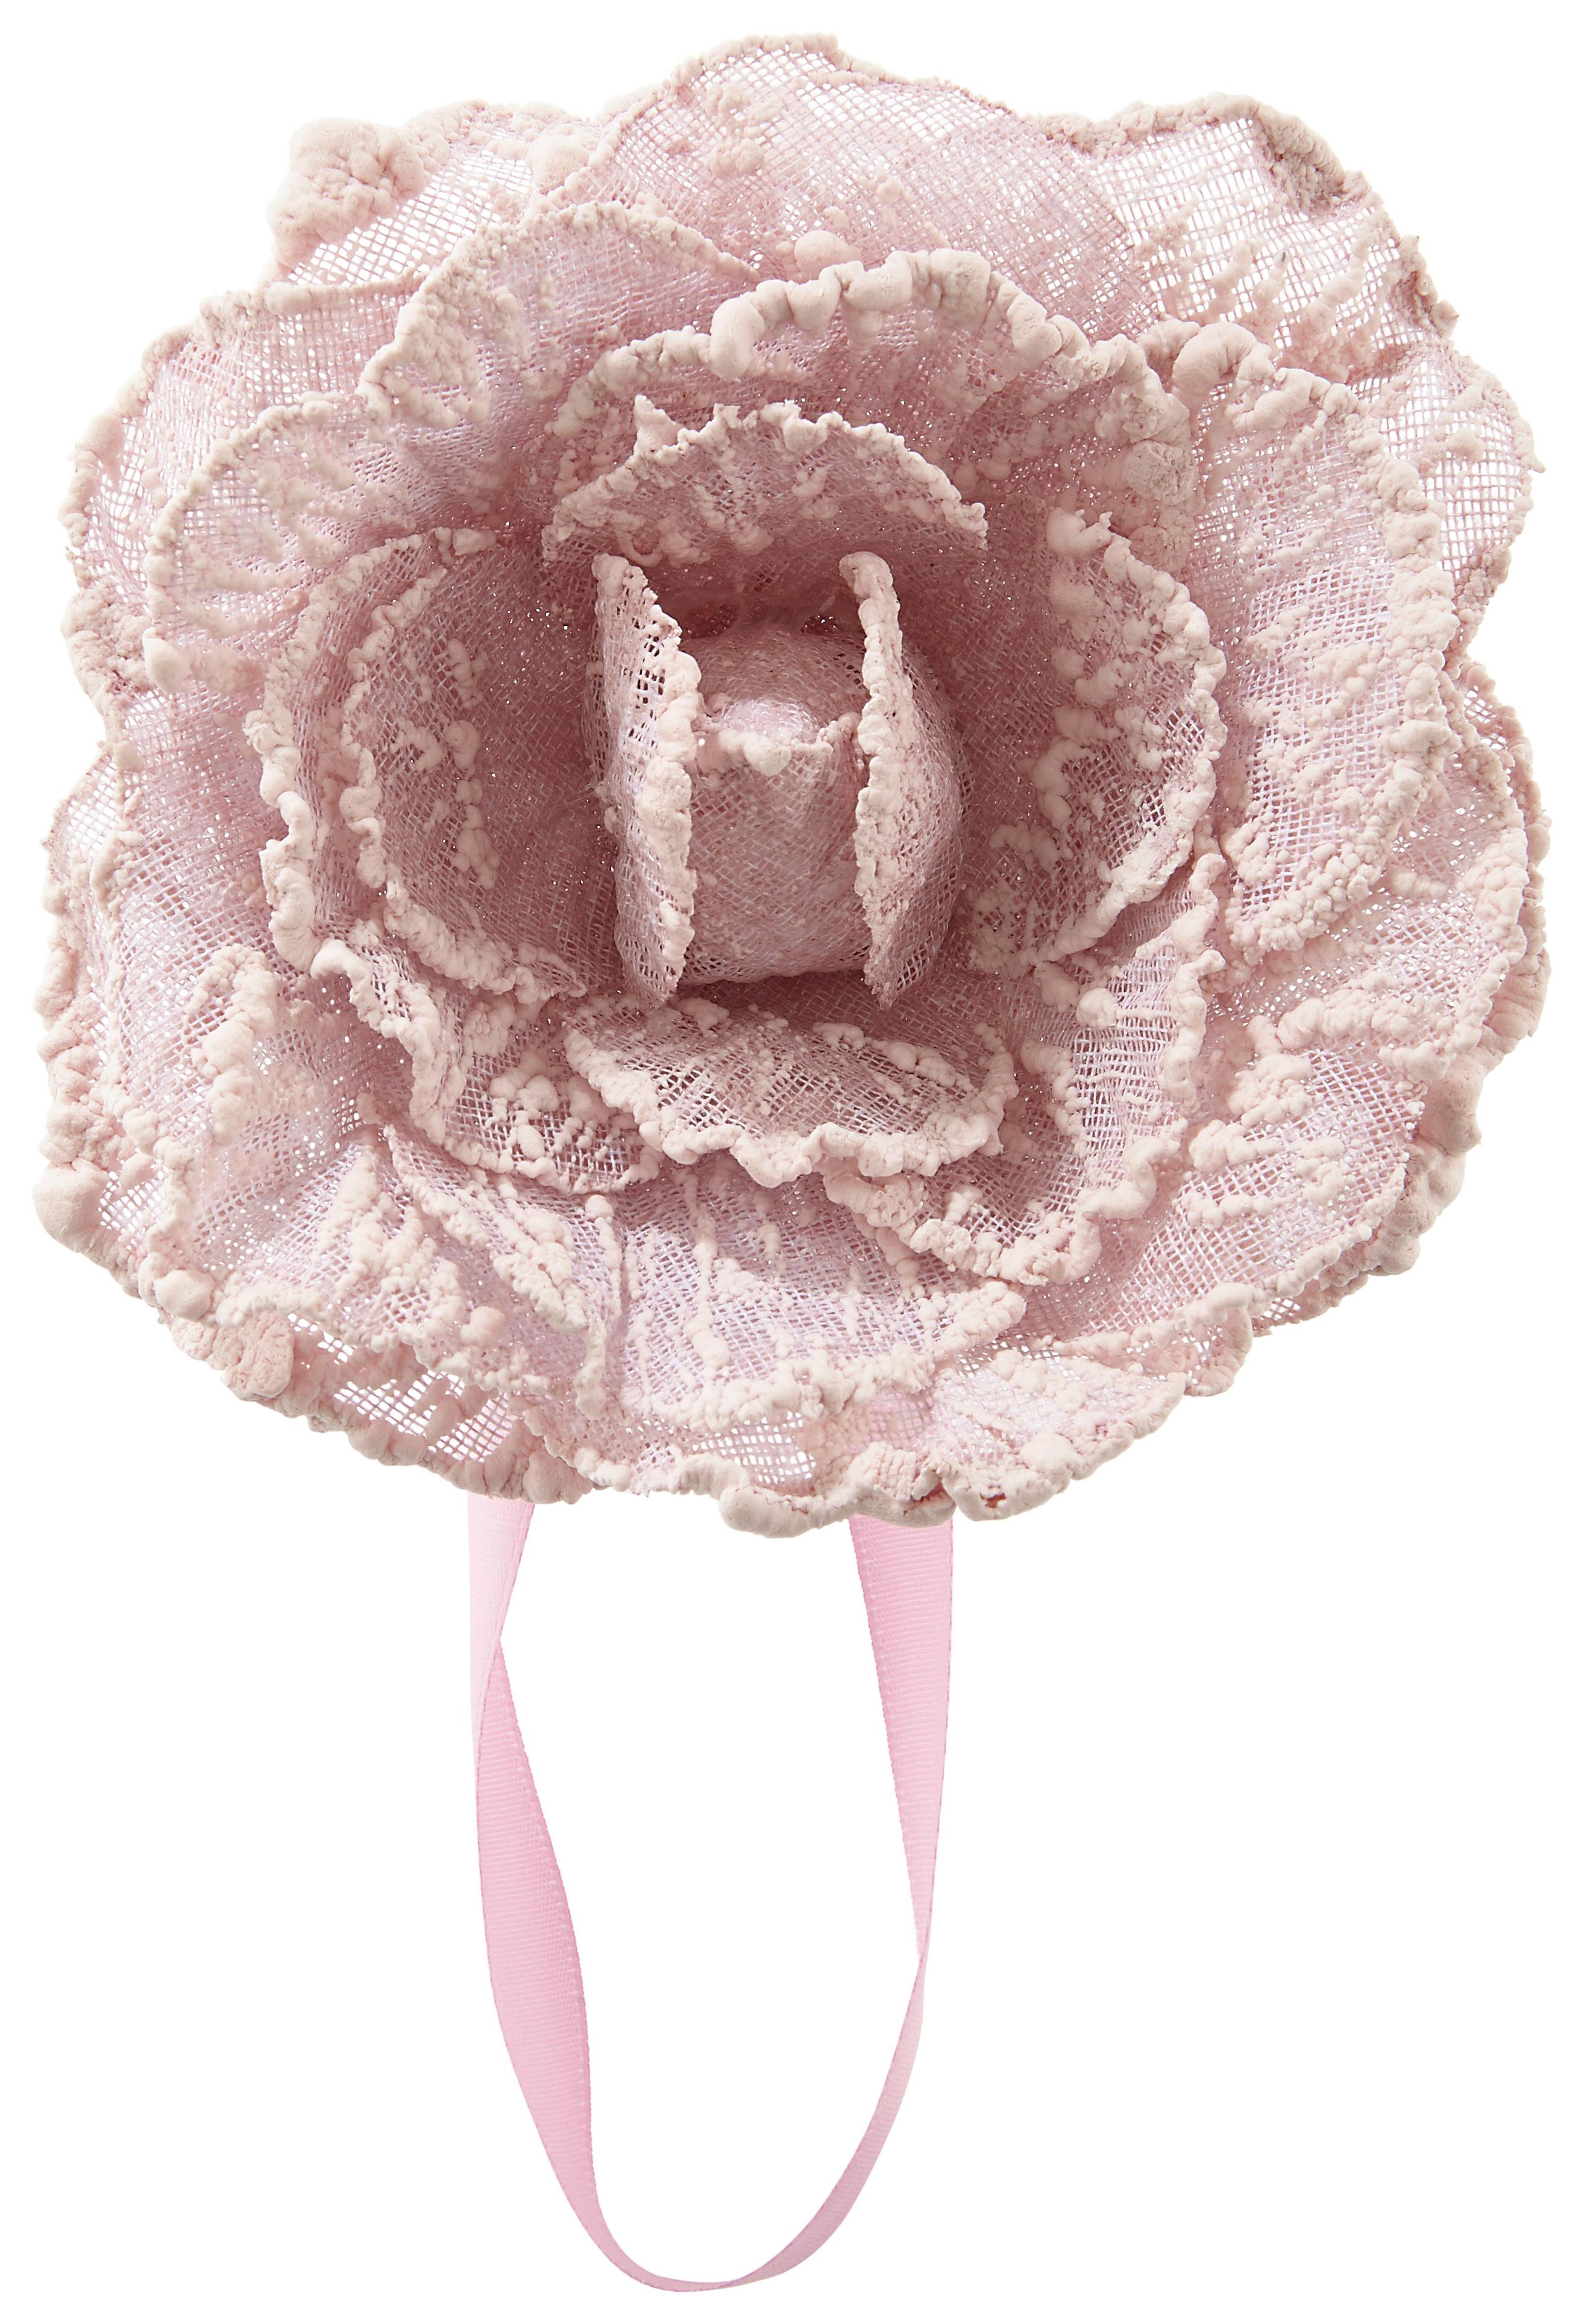 Riasiaca Spona Rose - ružová, Romantický / Vidiecky, textil (11cm) - Modern Living